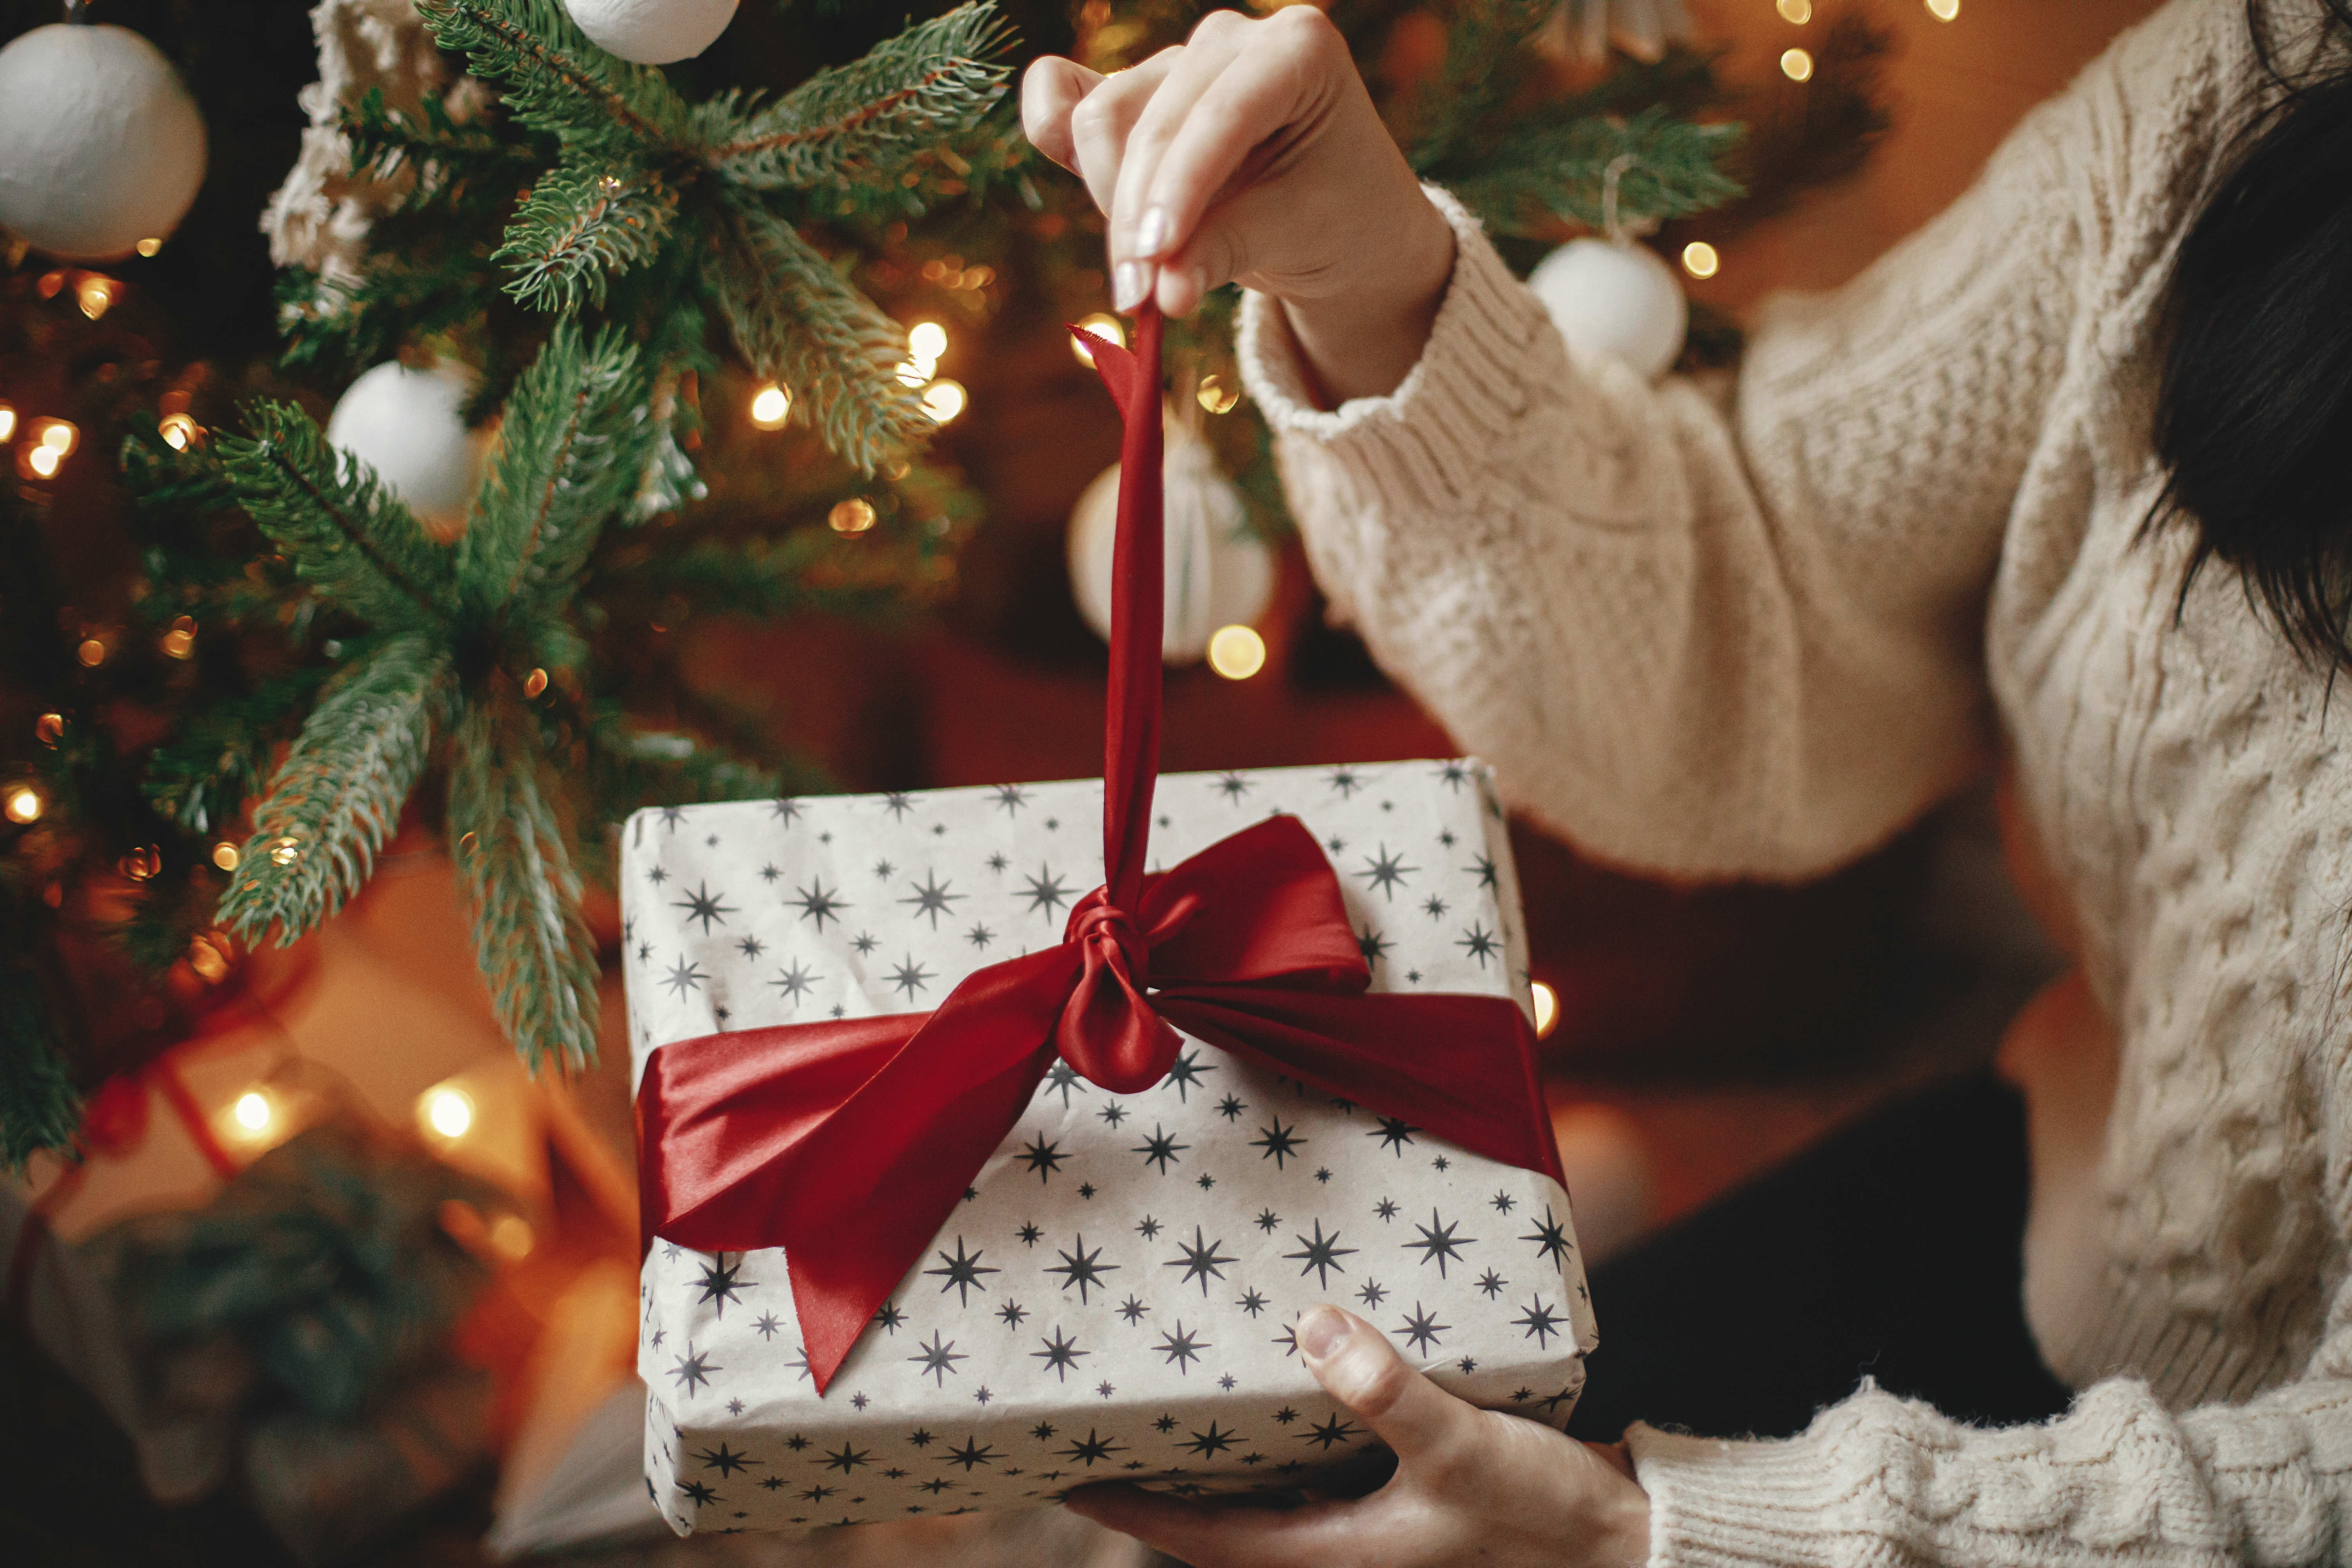 Les mains dans un pull douillet en train d'ouvrir un cadeau de Noël | Source : Shutterstock